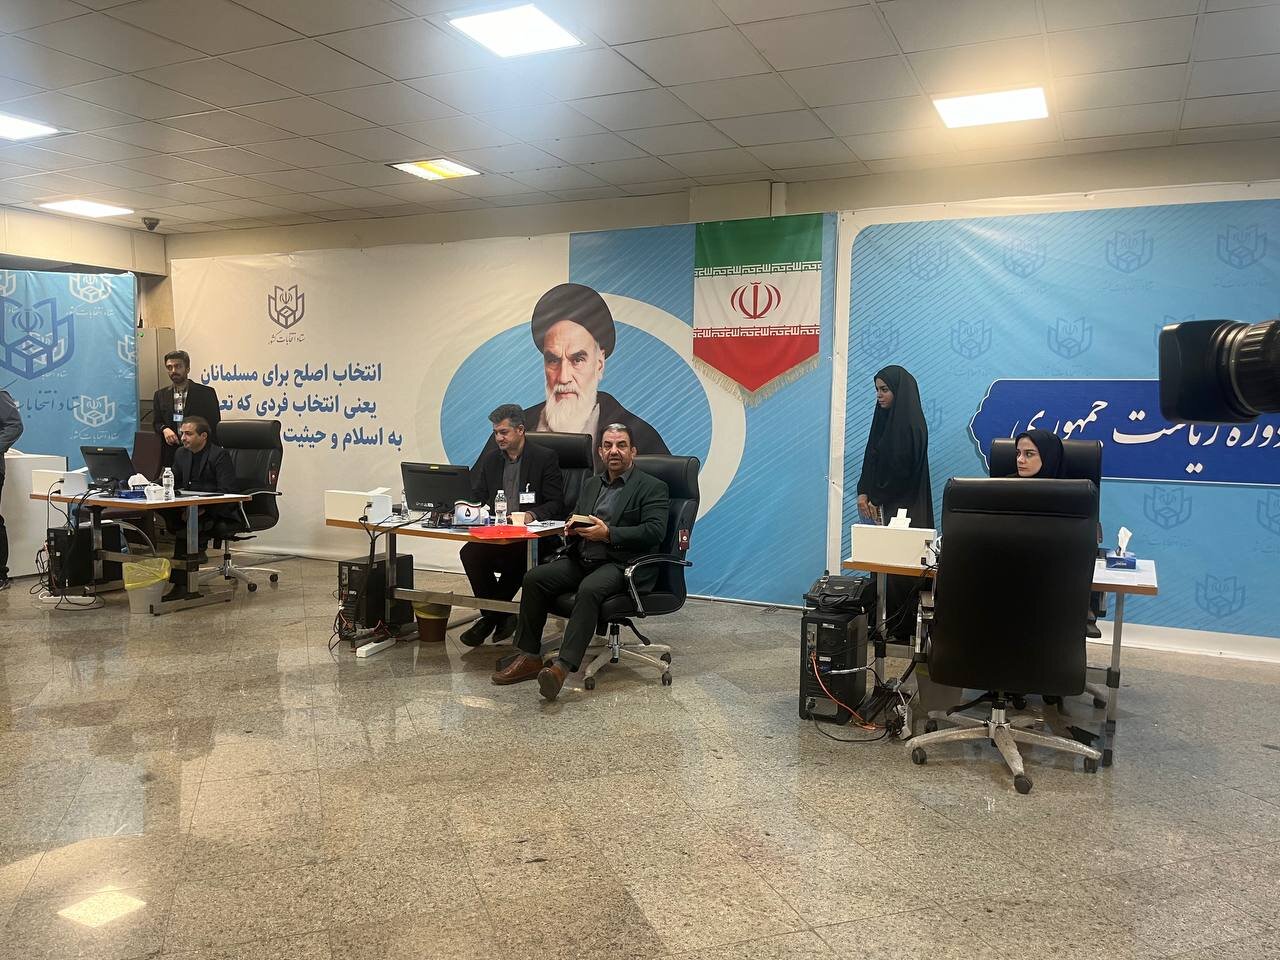 این زن با پوشش متفاوت کاندیدای ریاست جمهوری شد /وزیر احمدی نژاد هم آمد /جاسمی سودای پاستور به سرش زد +عکس